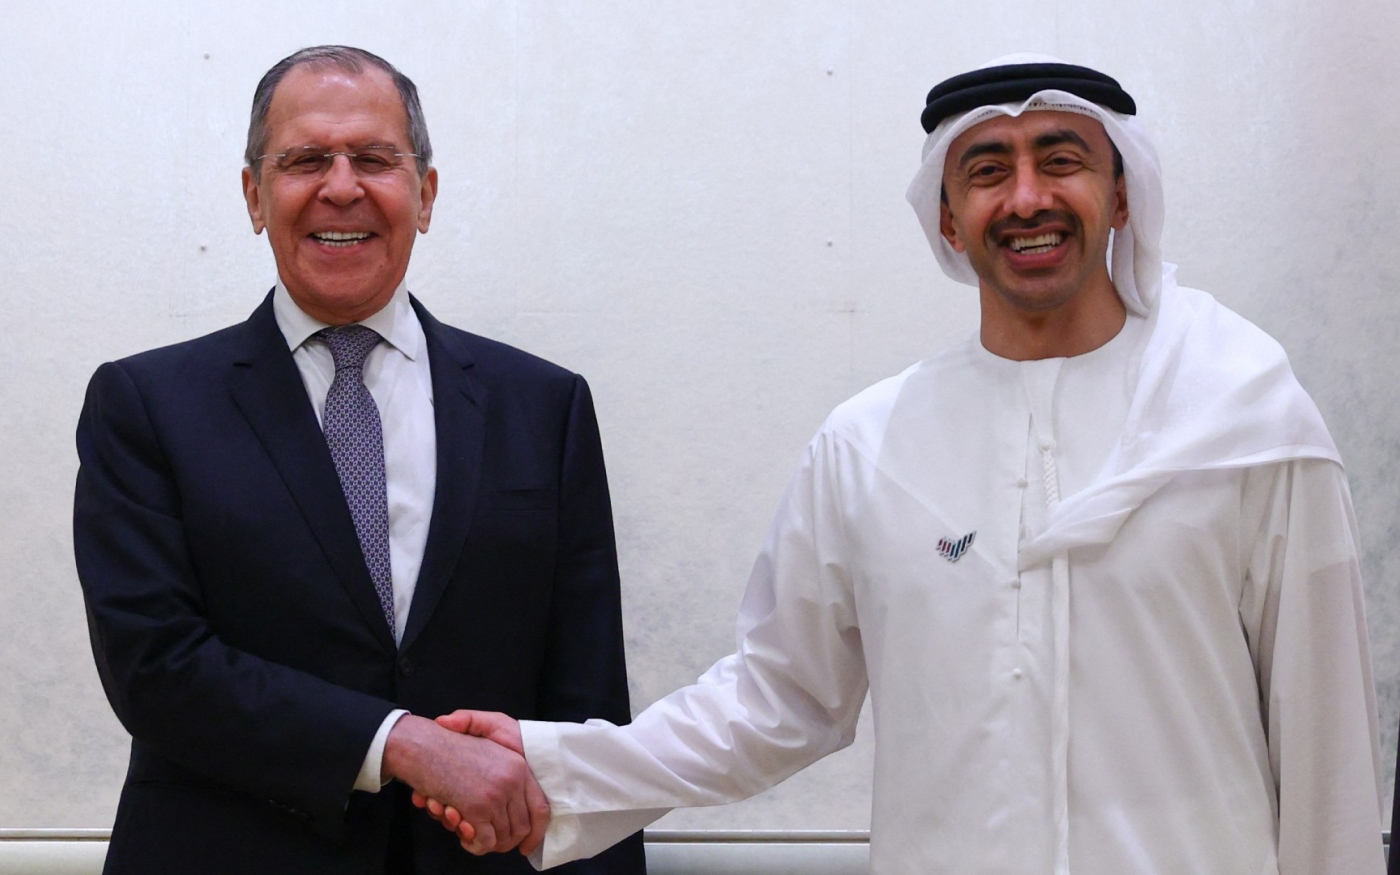 Le ministre russe des Affaires étrangères Sergueï Lavrov rencontre son homologue émirati, le cheikh Abdallah ben Zayed al-Nahyane, le 9 mars 2021 à Abou Dabi (AFP)